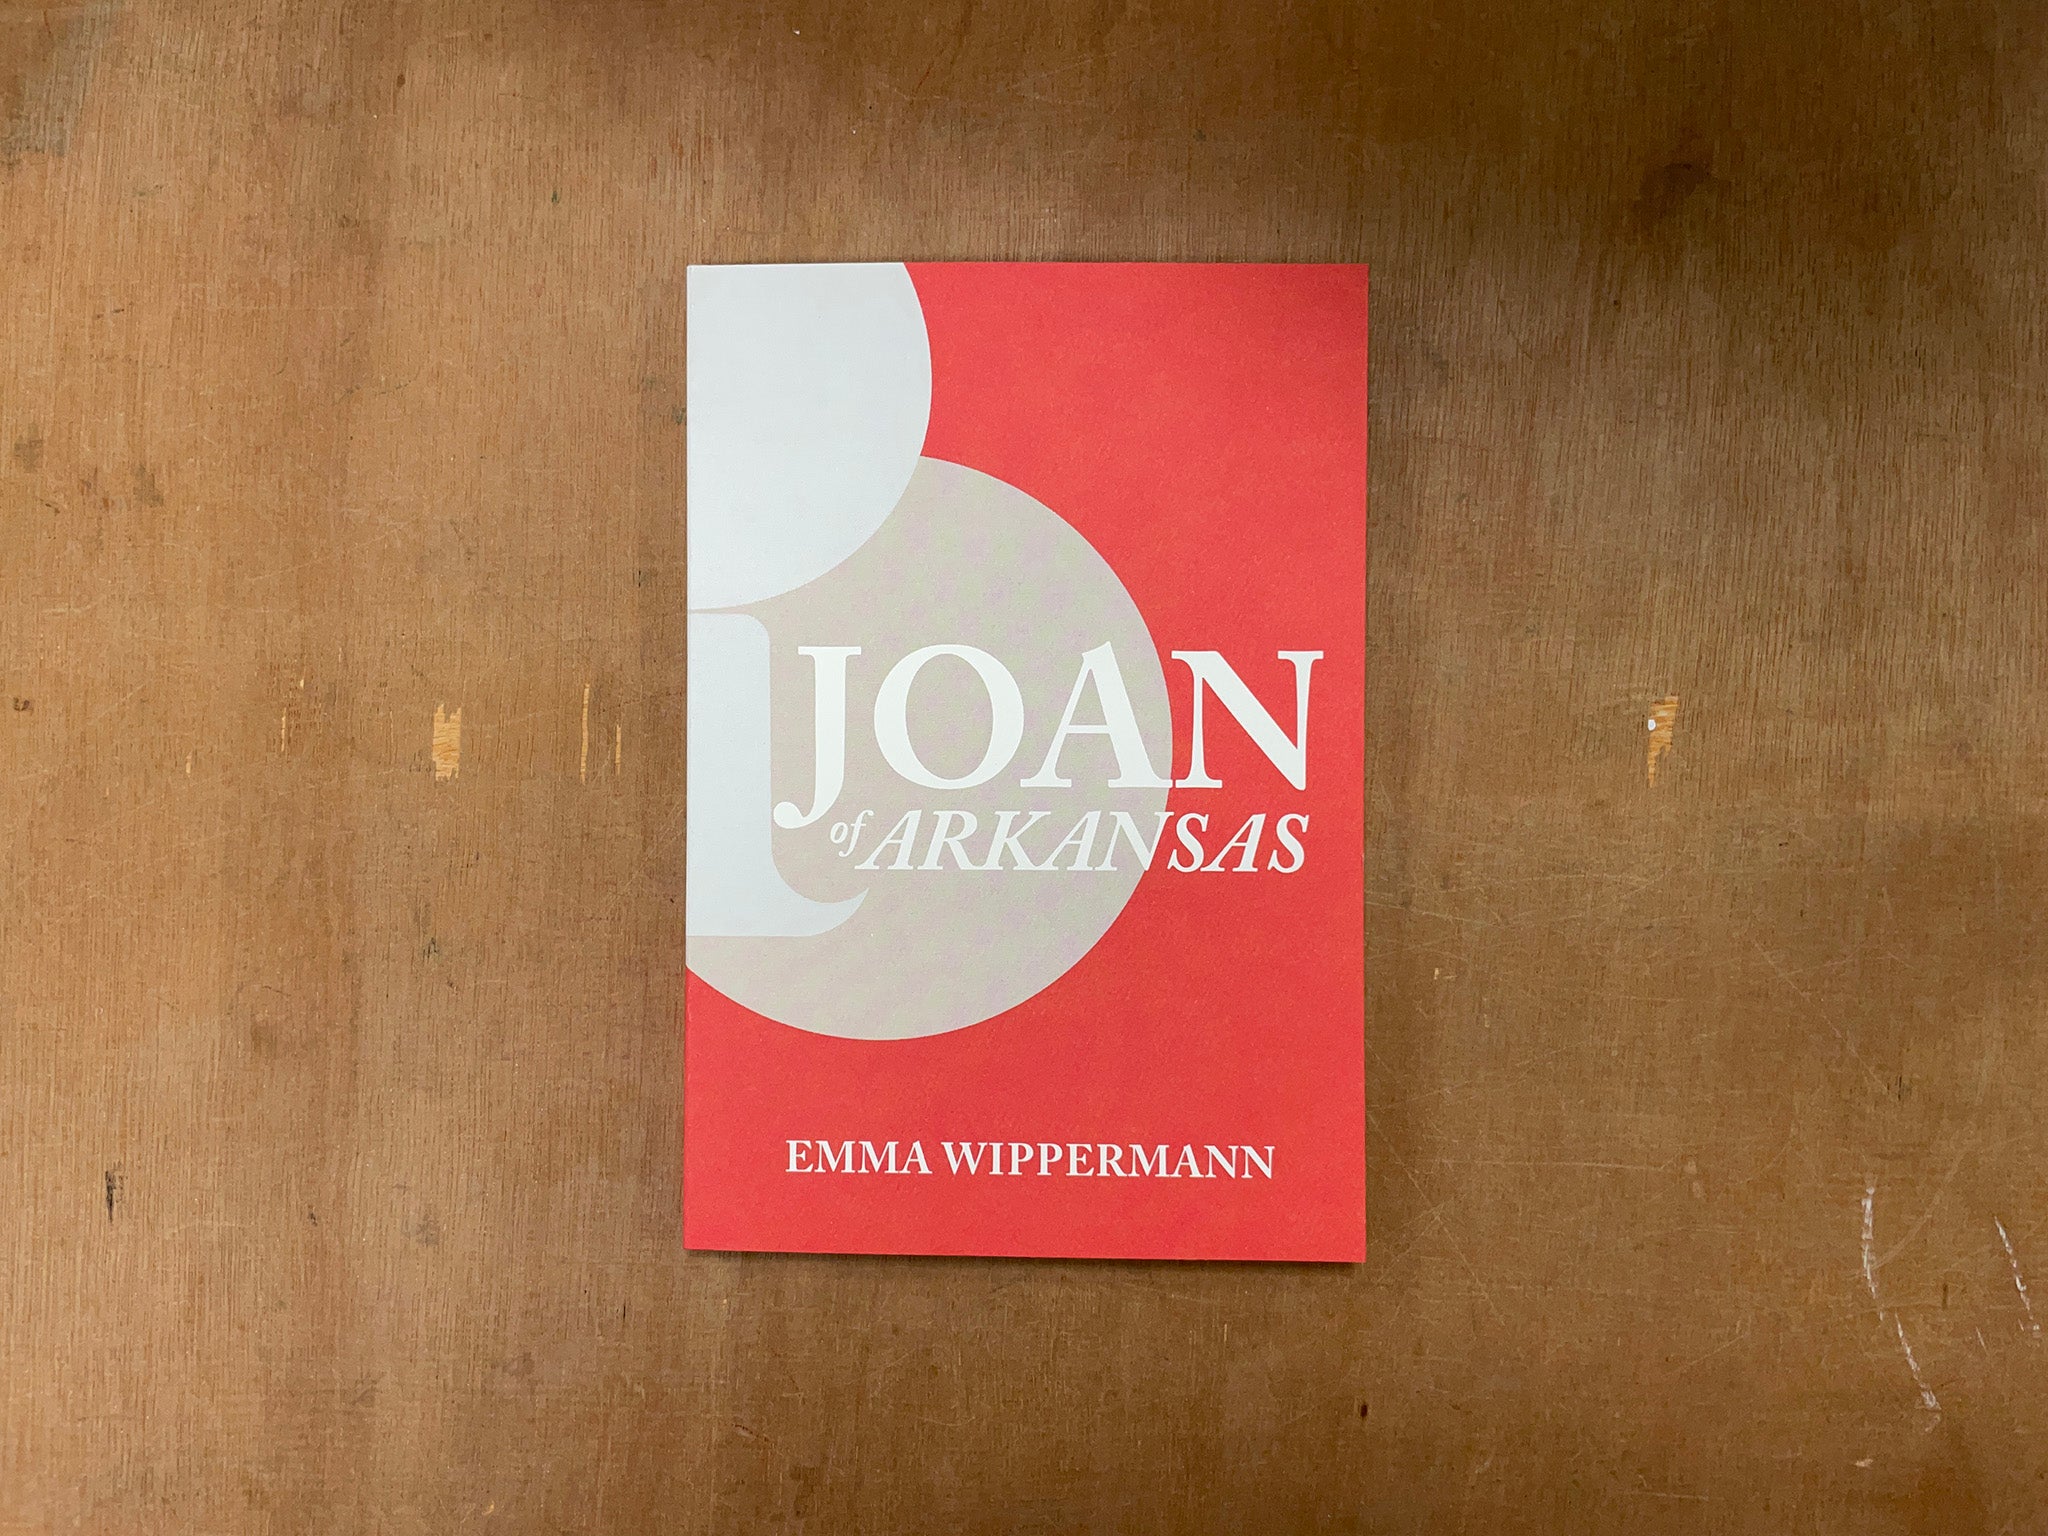 JOAN OF ARKANSAS by Emma Wippermann